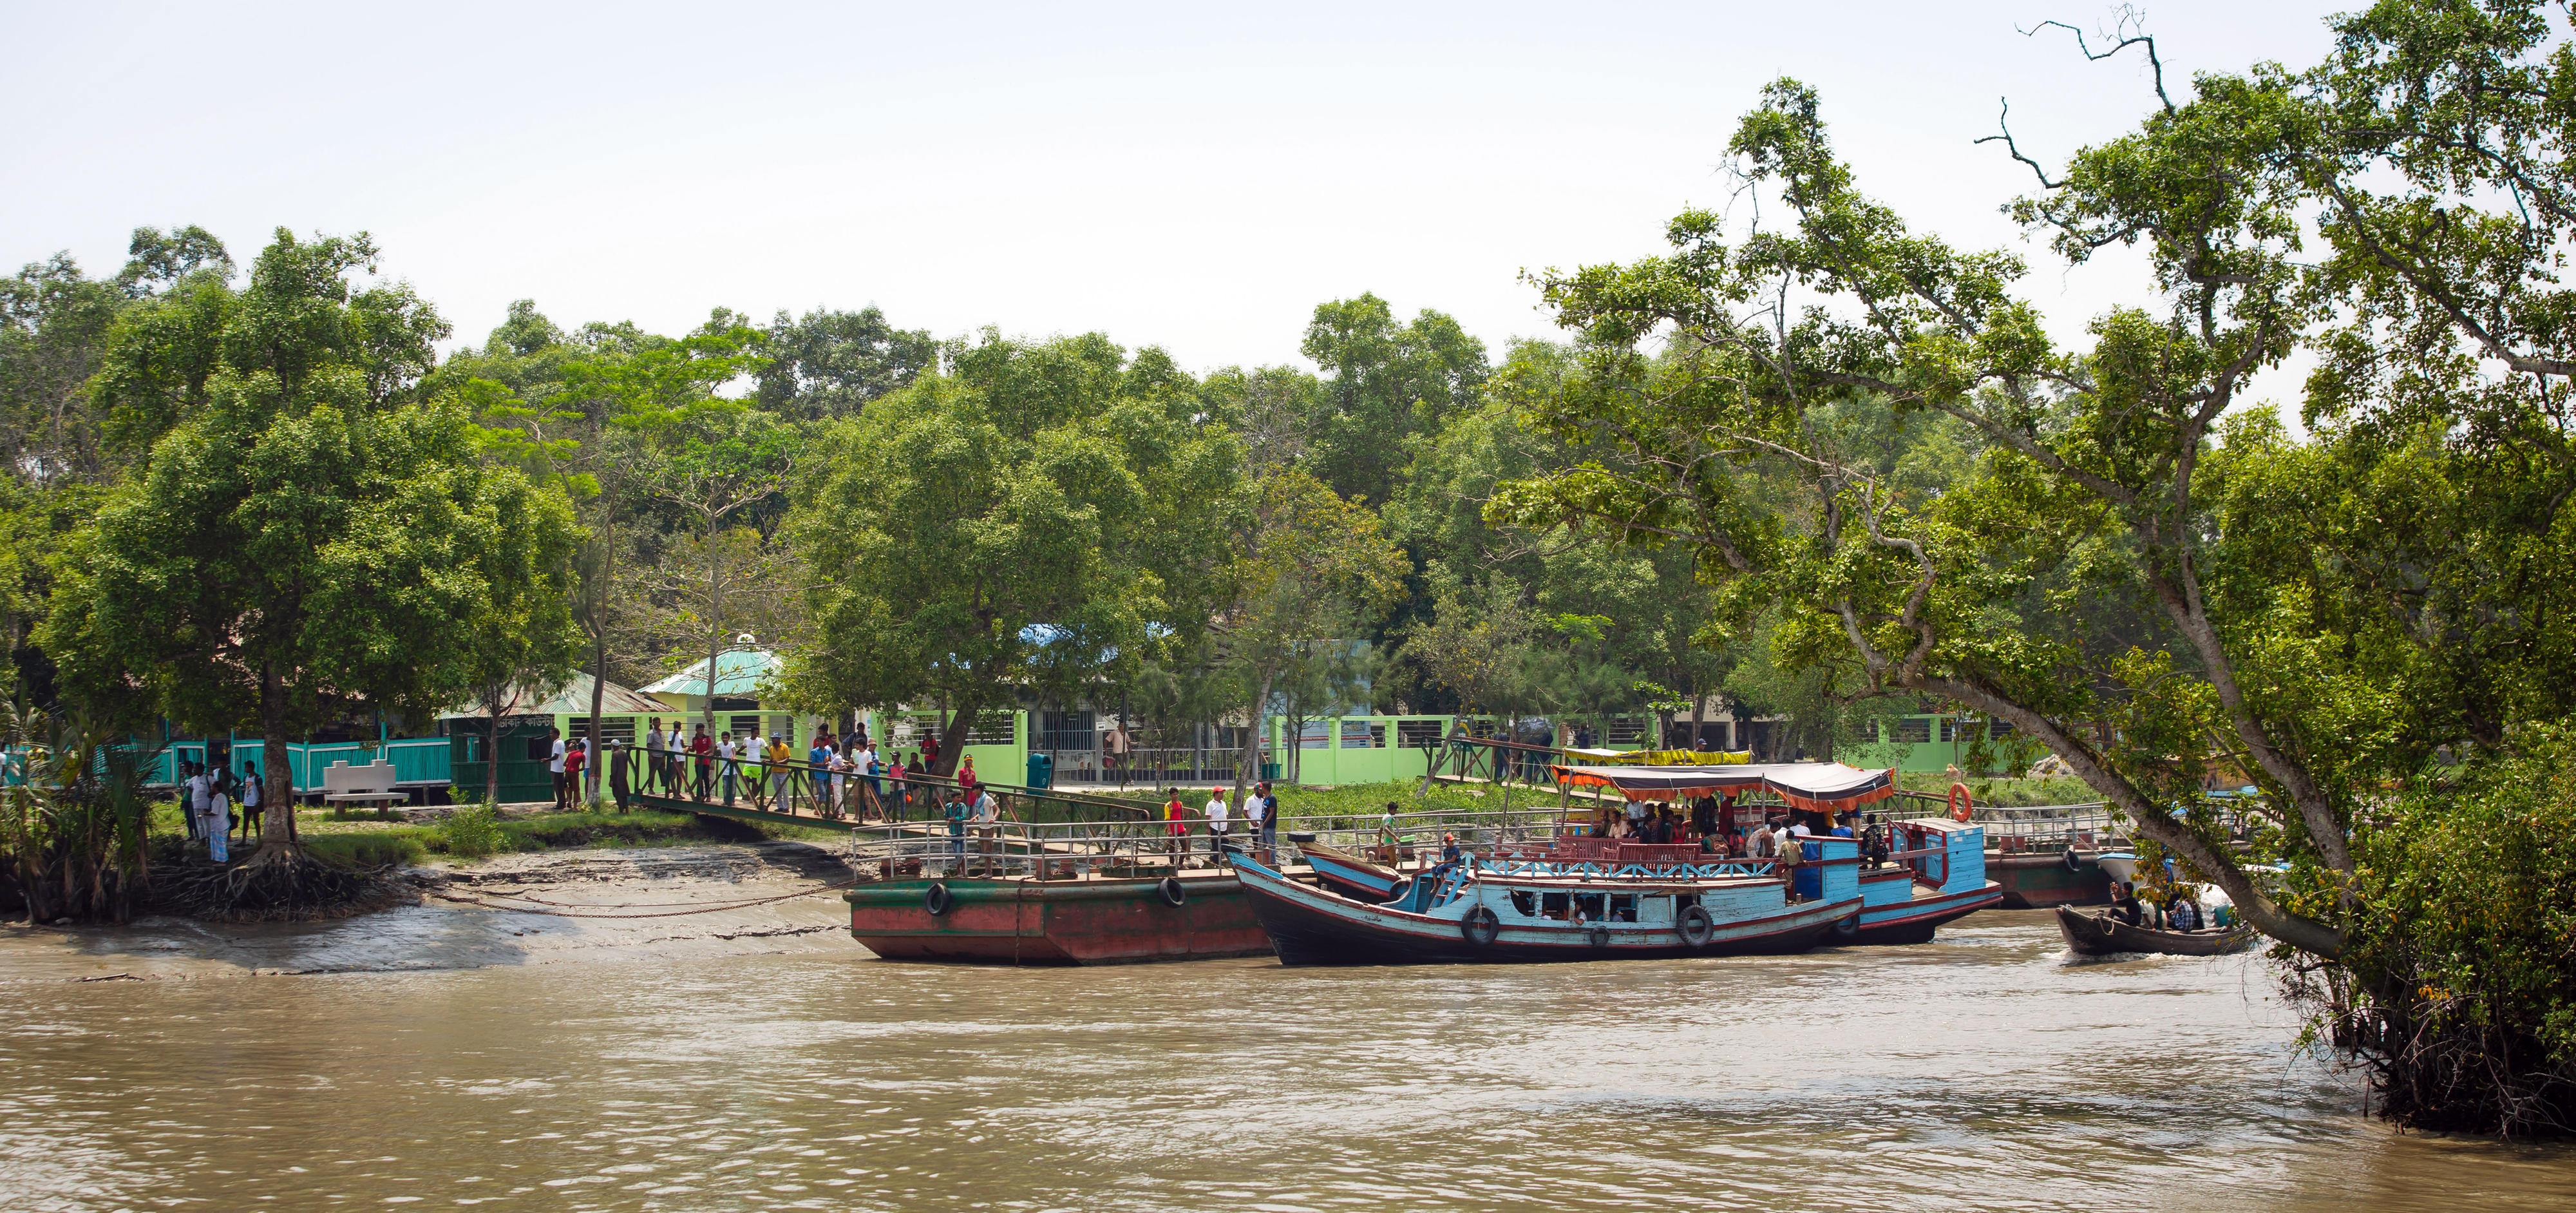 Schiffe am Ufer nahe des weltgrössten Mangrovenwaldes (Sundarbans) nahe der Stadt Mongla, im Südwesten von Bangladesch